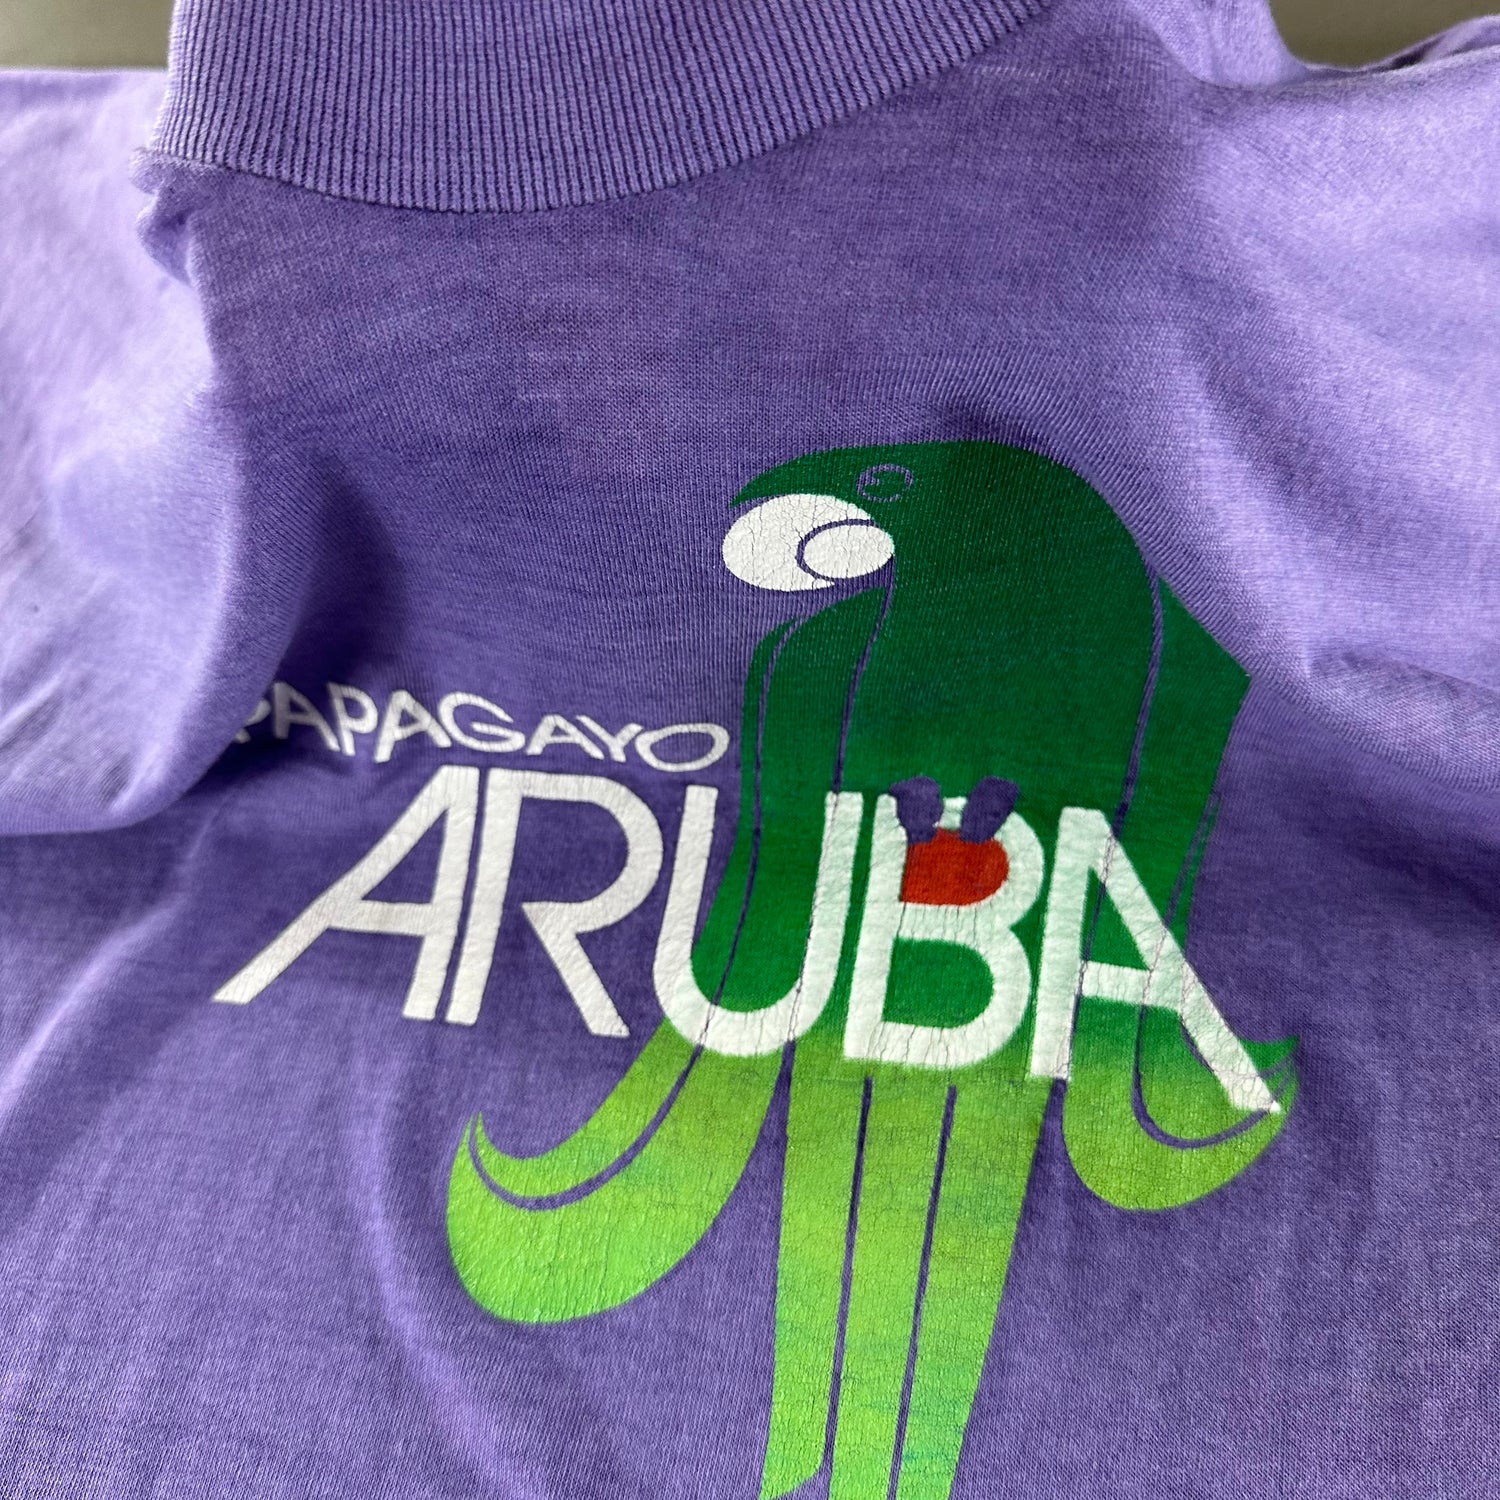 Vintage 1980s Aruba T-shirt size Large